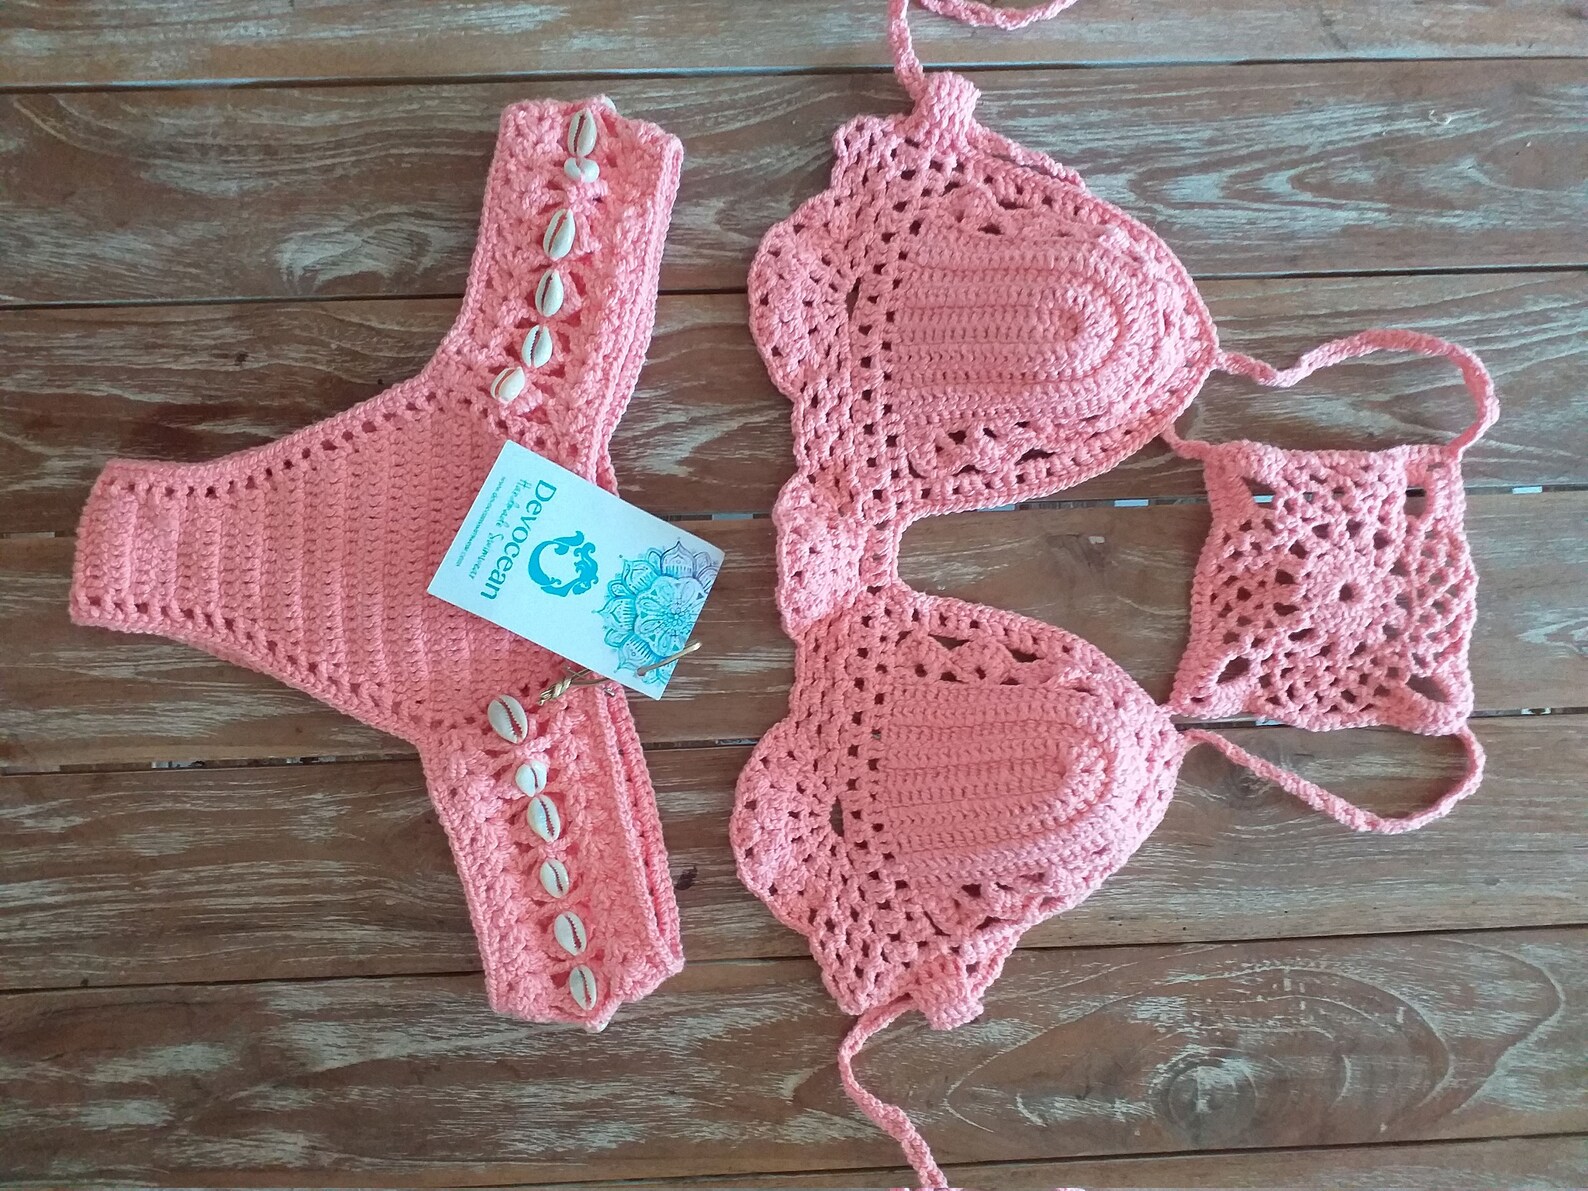 Crochet Bikini Cowrie Shell Crochet Swimsuit Crochet Lace - Etsy